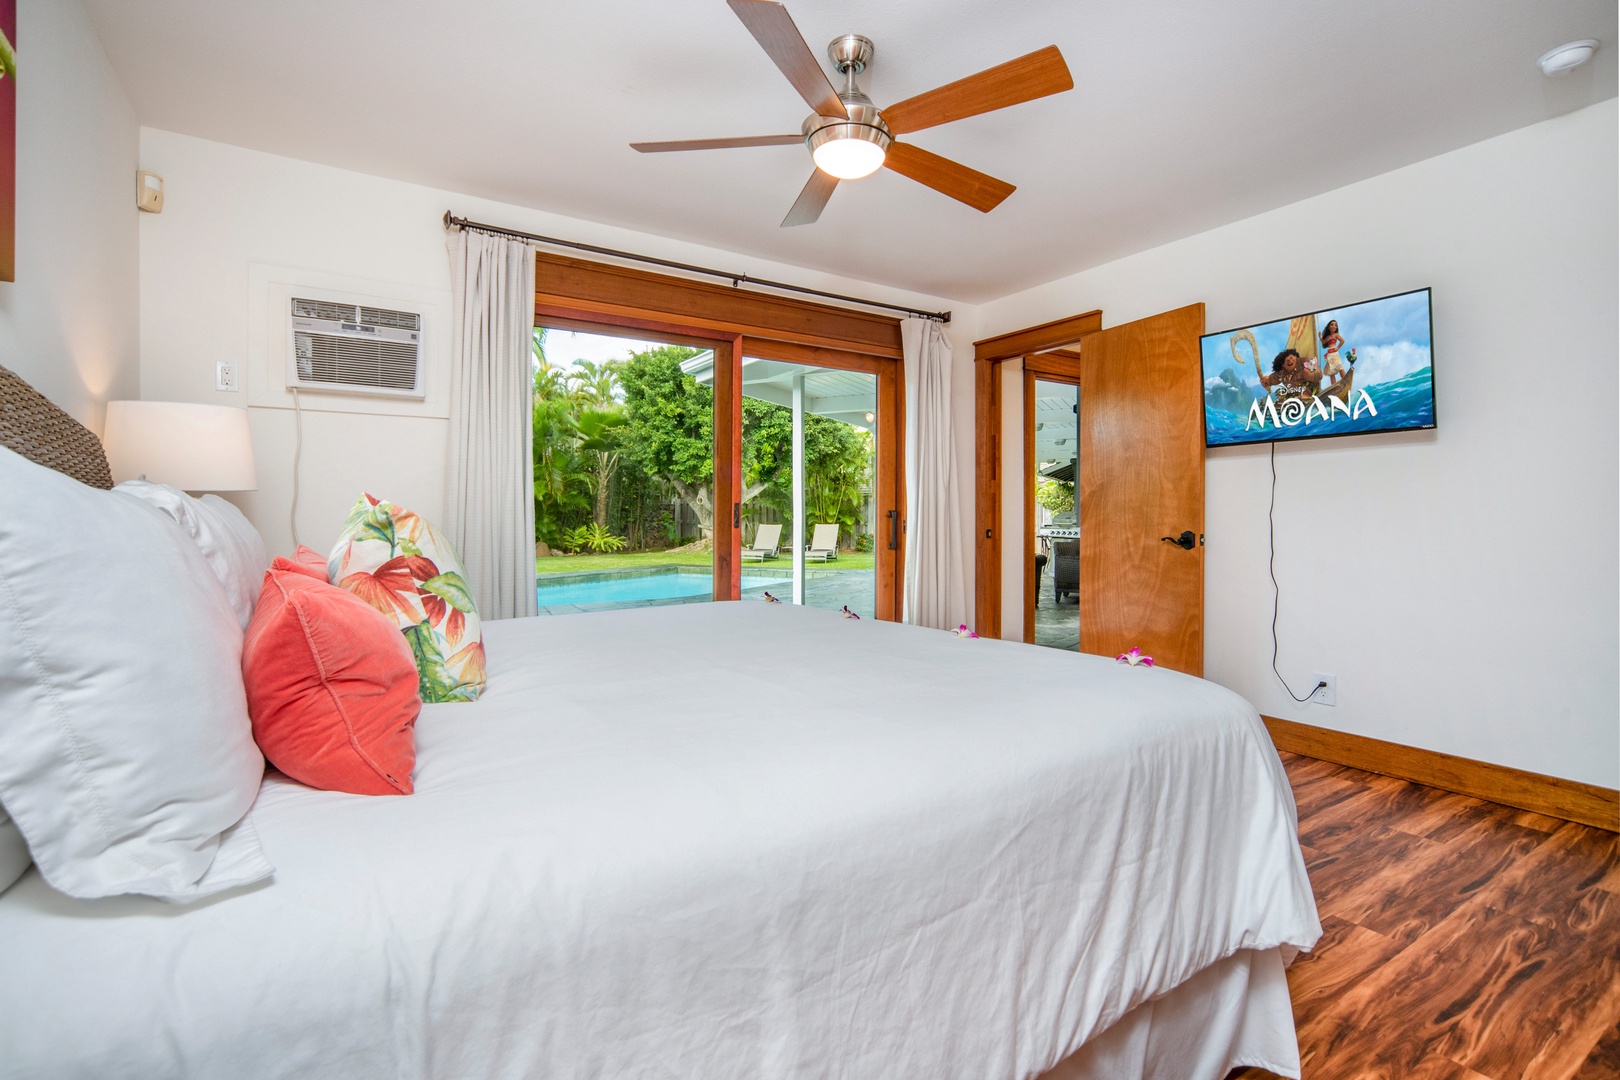 Honolulu Vacation Rentals, Hale Niuiki - King bedroom off the pool deck.